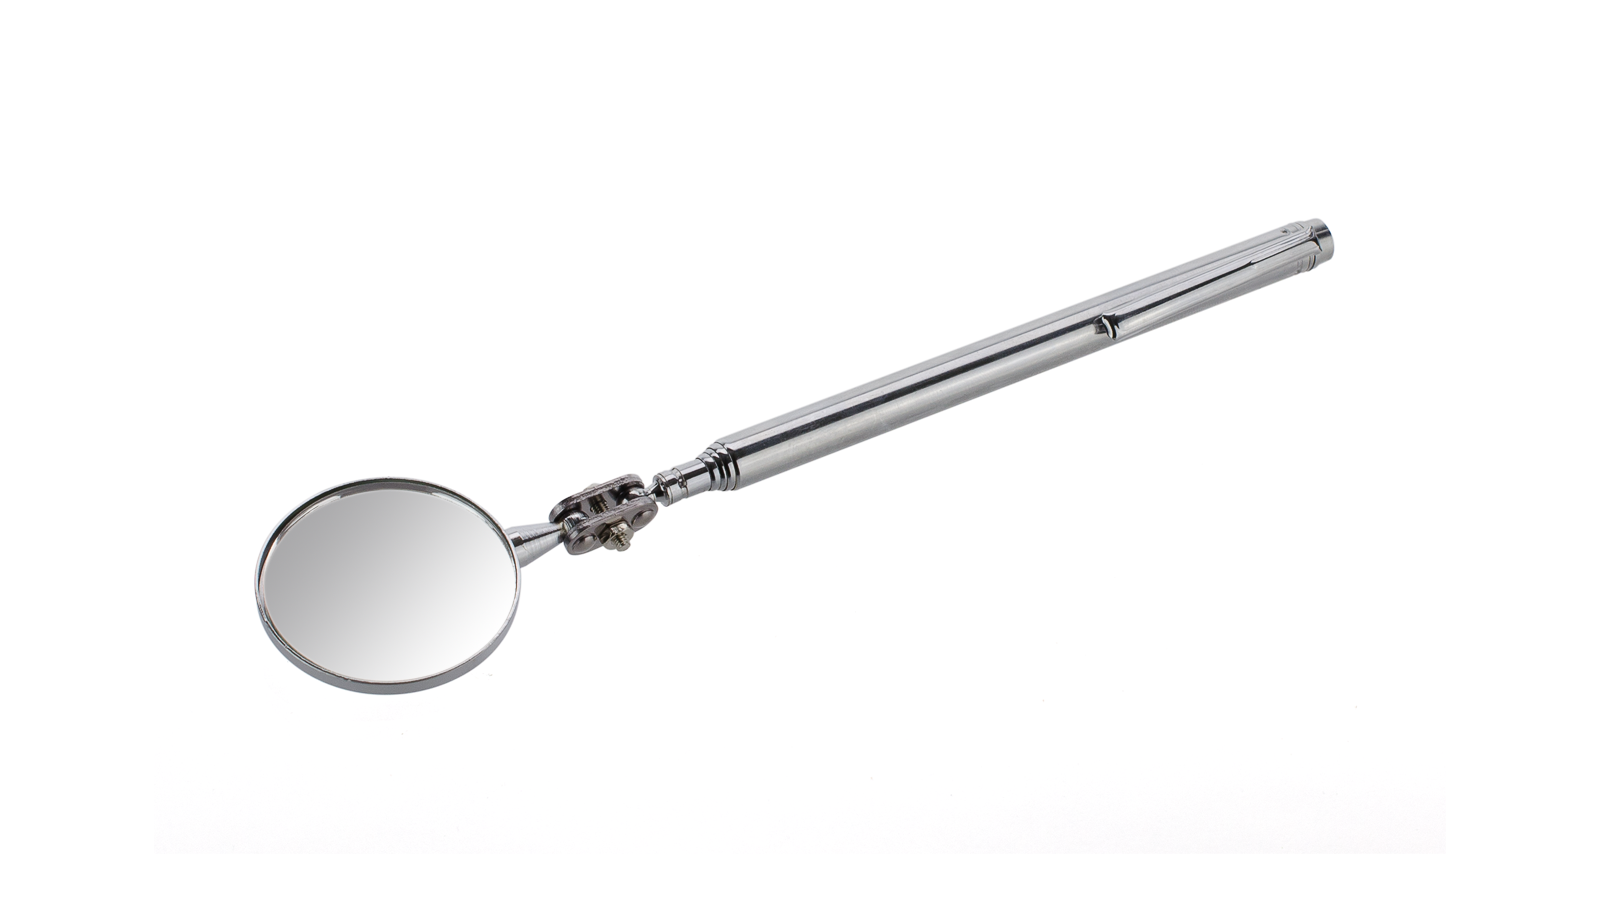 Teleskop-Inspektionsspiegel, runder Auto-Inspektionsspiegel, 50mm Edelstahl- Inspektionsspiegel für